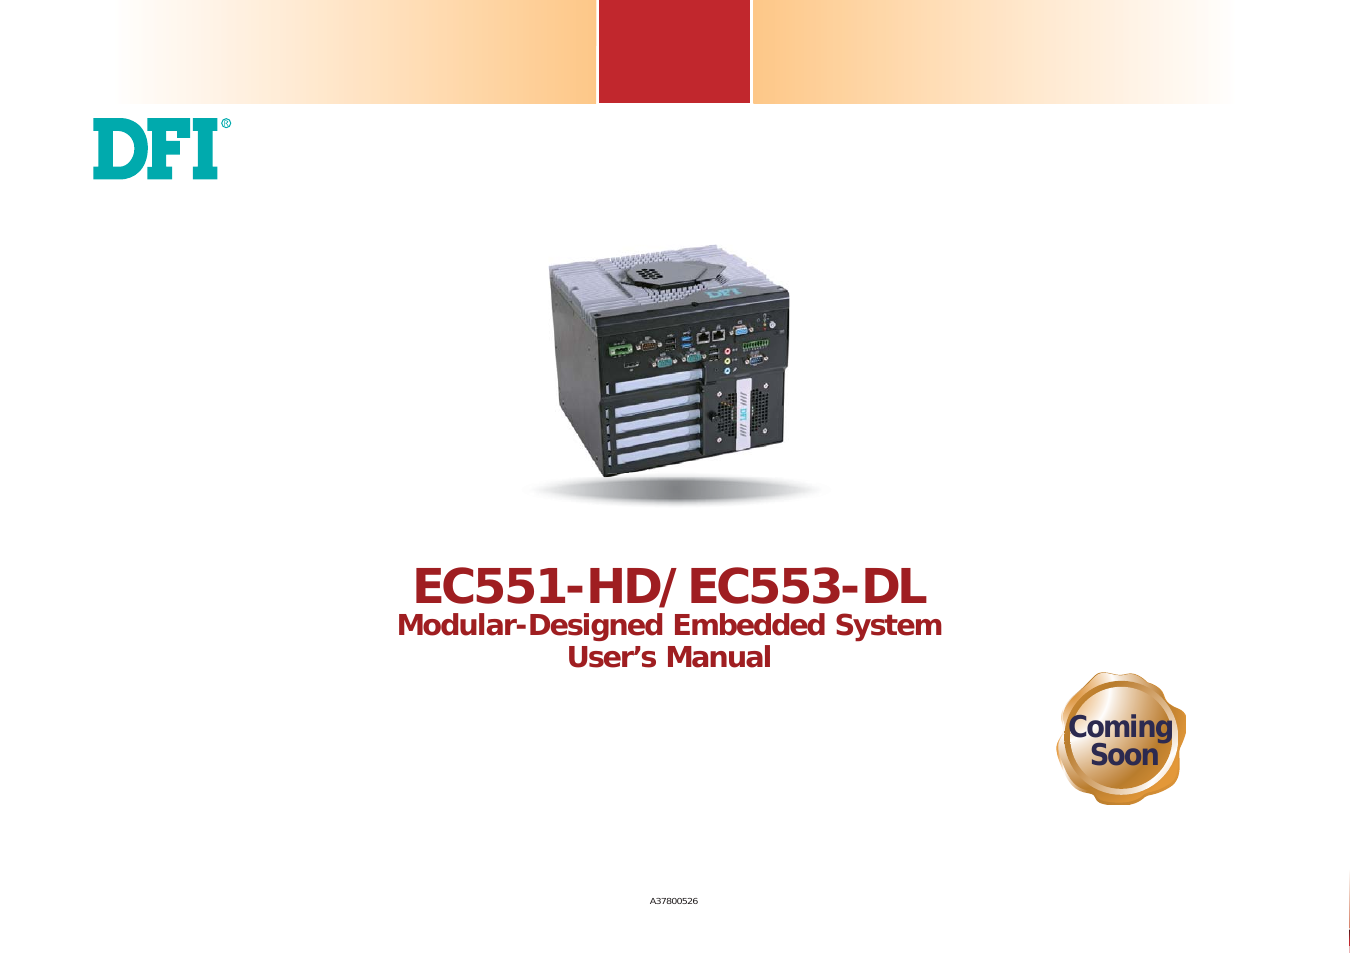 EC550/EC551-HD